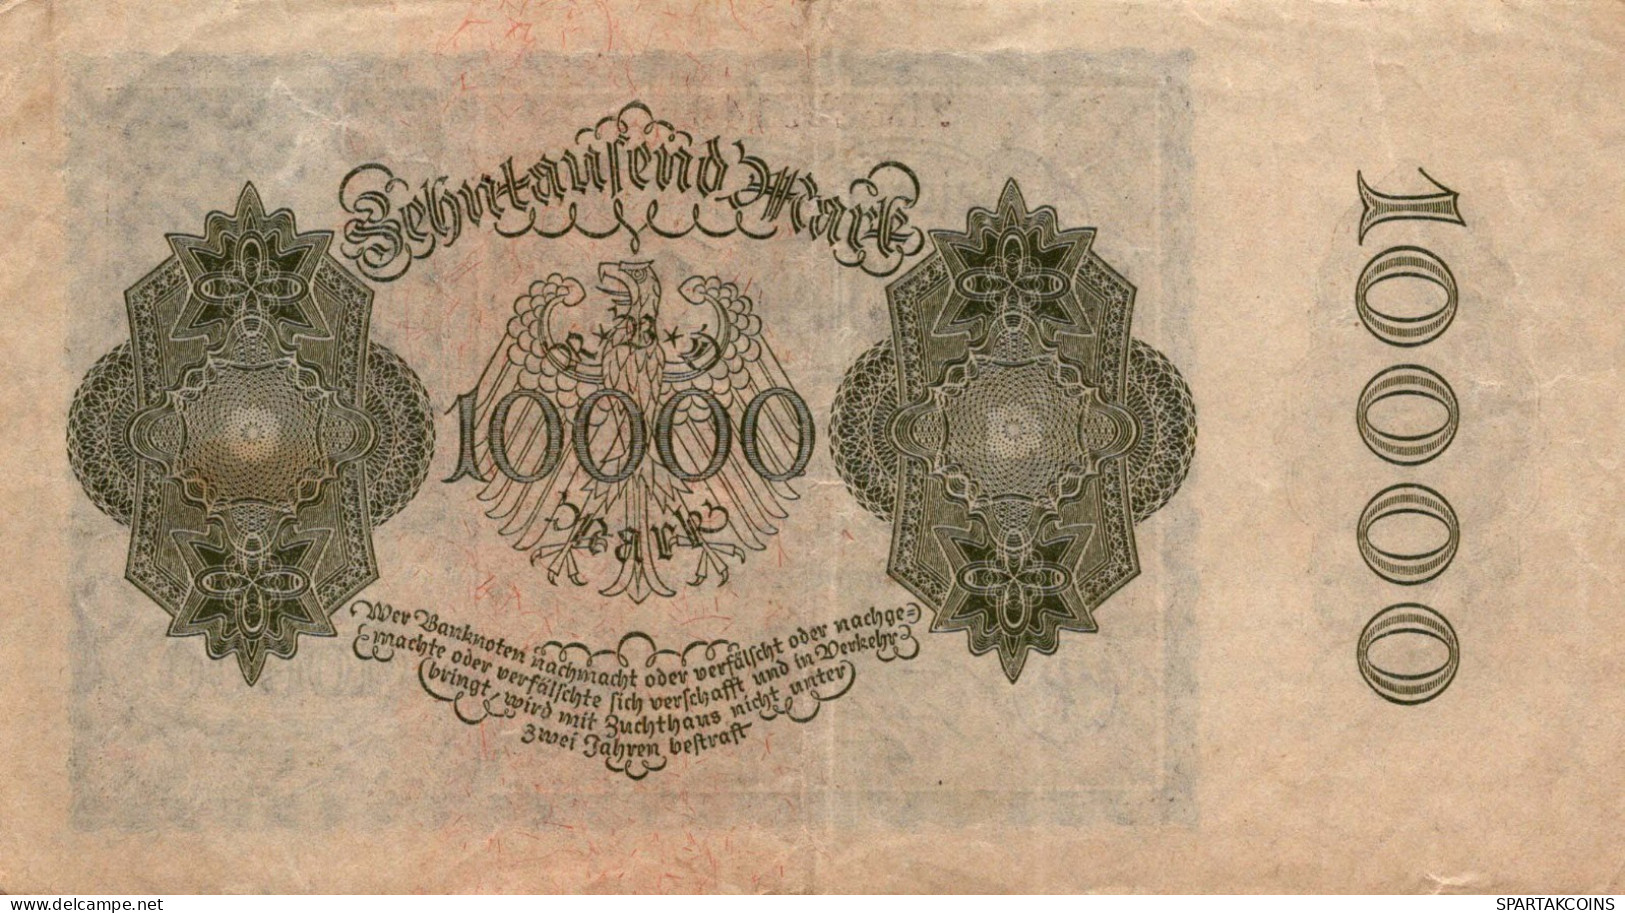 10000 MARK 1922 Stadt BERLIN DEUTSCHLAND Papiergeld Banknote #PL128 - [11] Local Banknote Issues